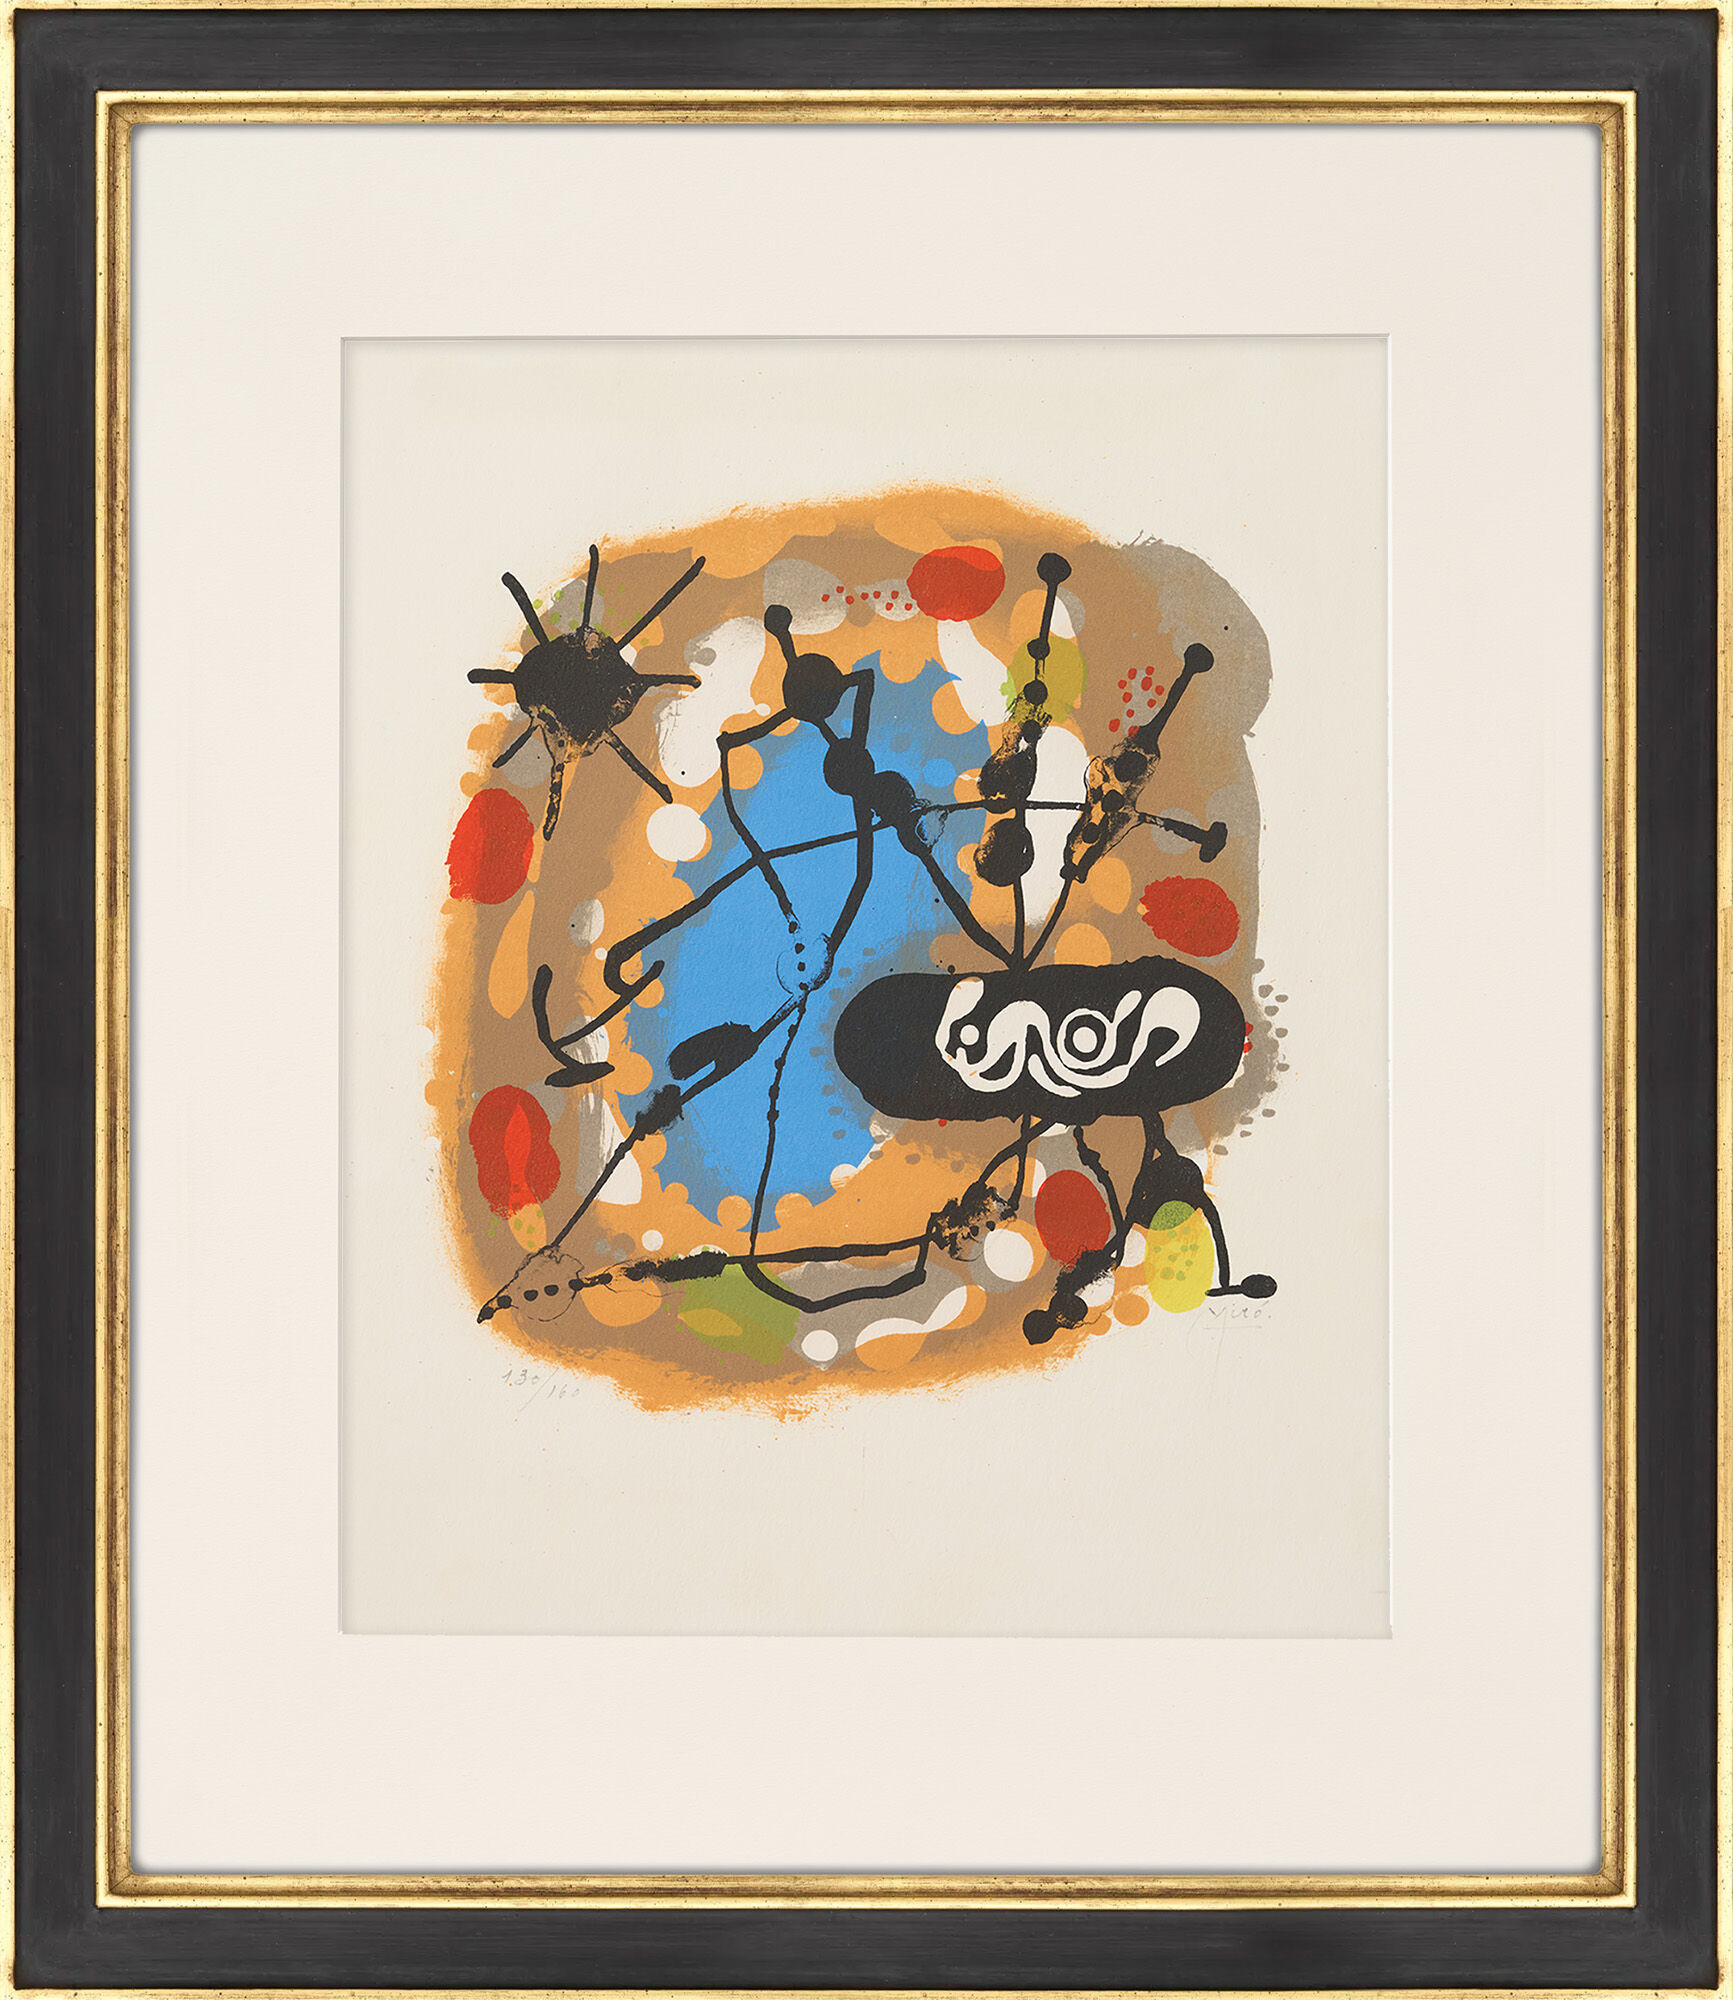 Billede "Atmosphera Miro" (1959) von Joan Miró